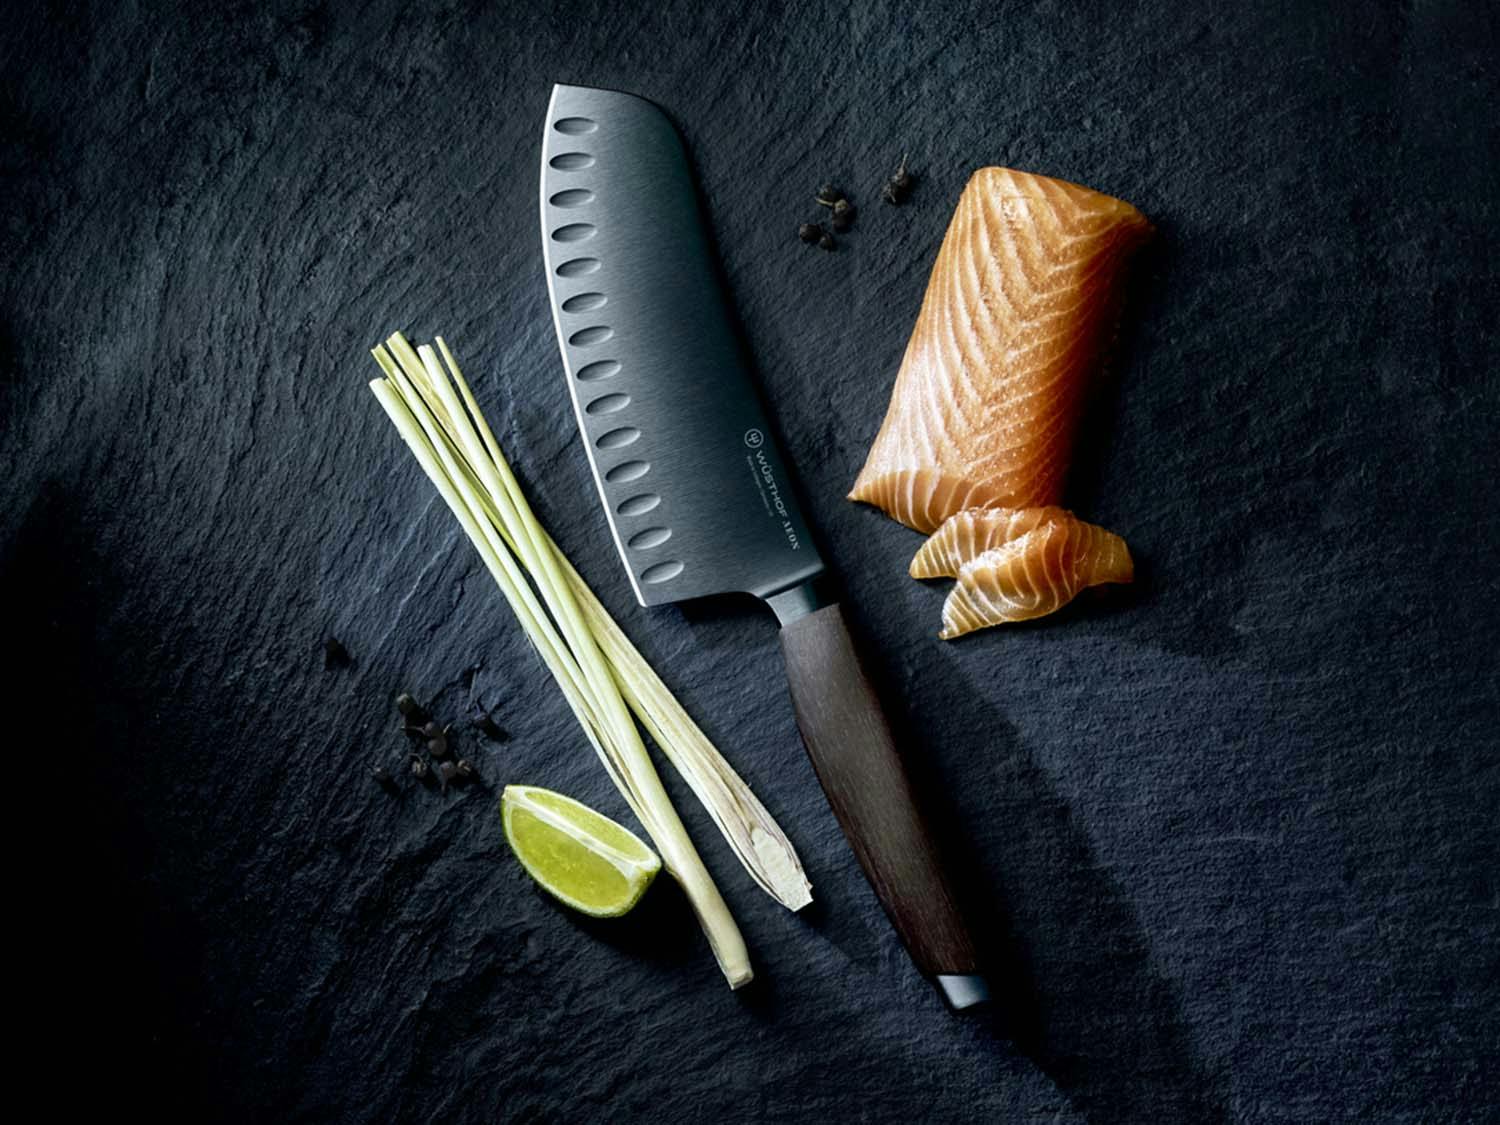 Aeon Santoku knife next to a piece of salmon